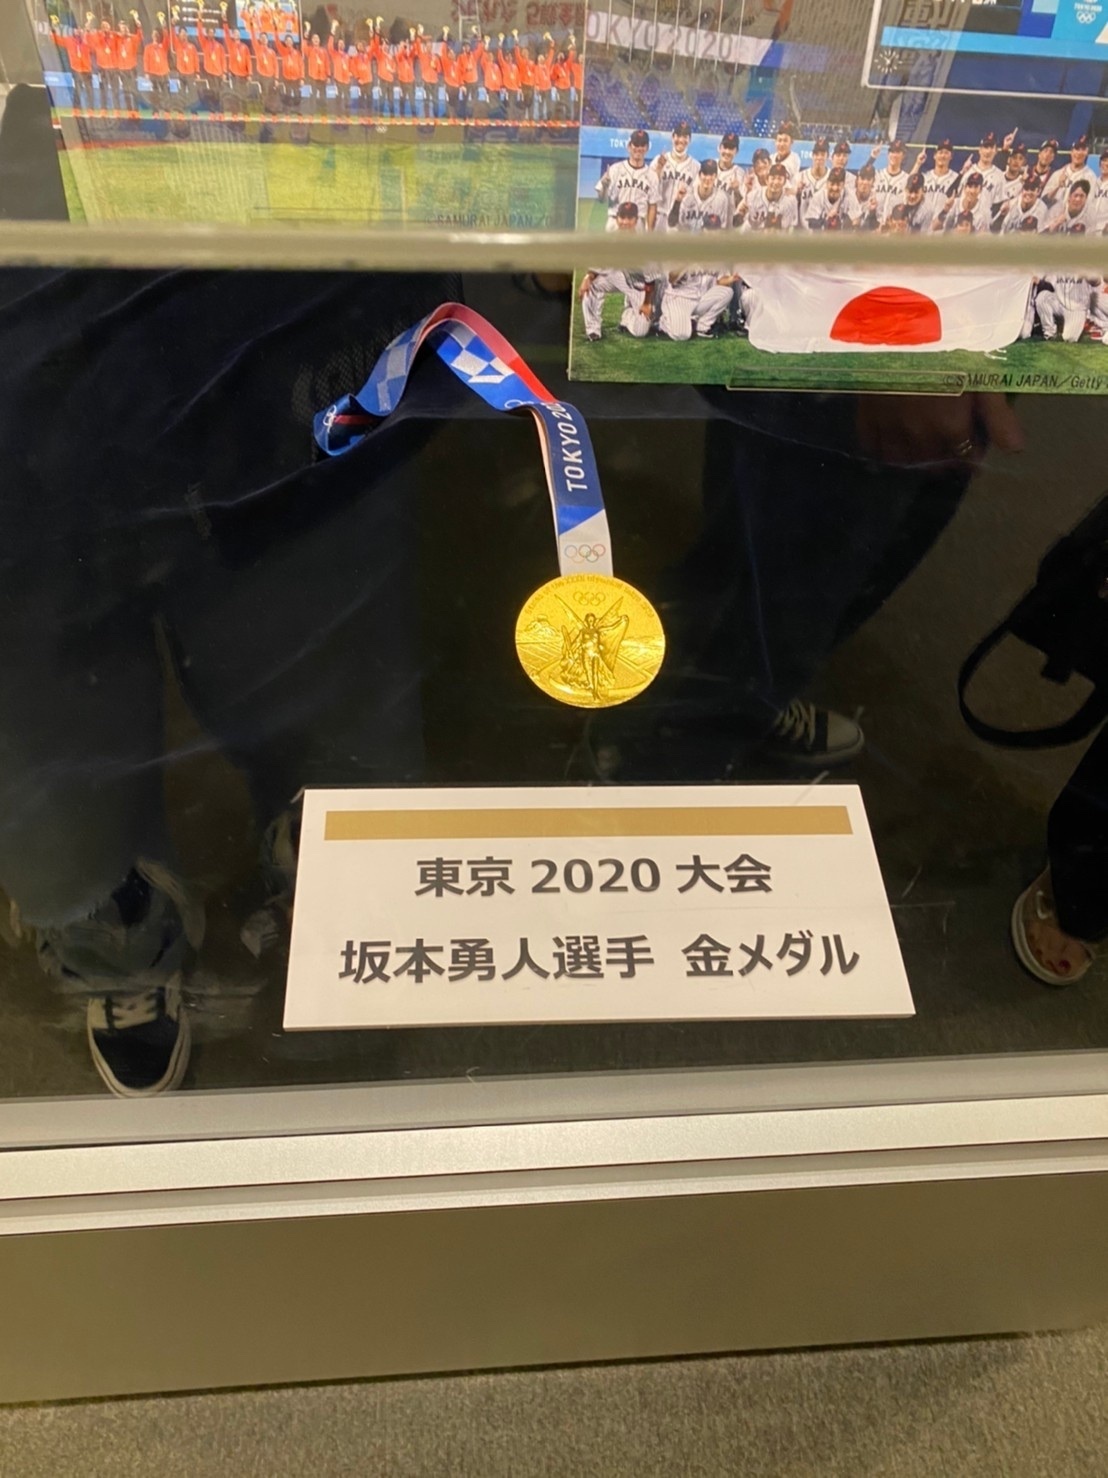 東京オリンピック。『金』